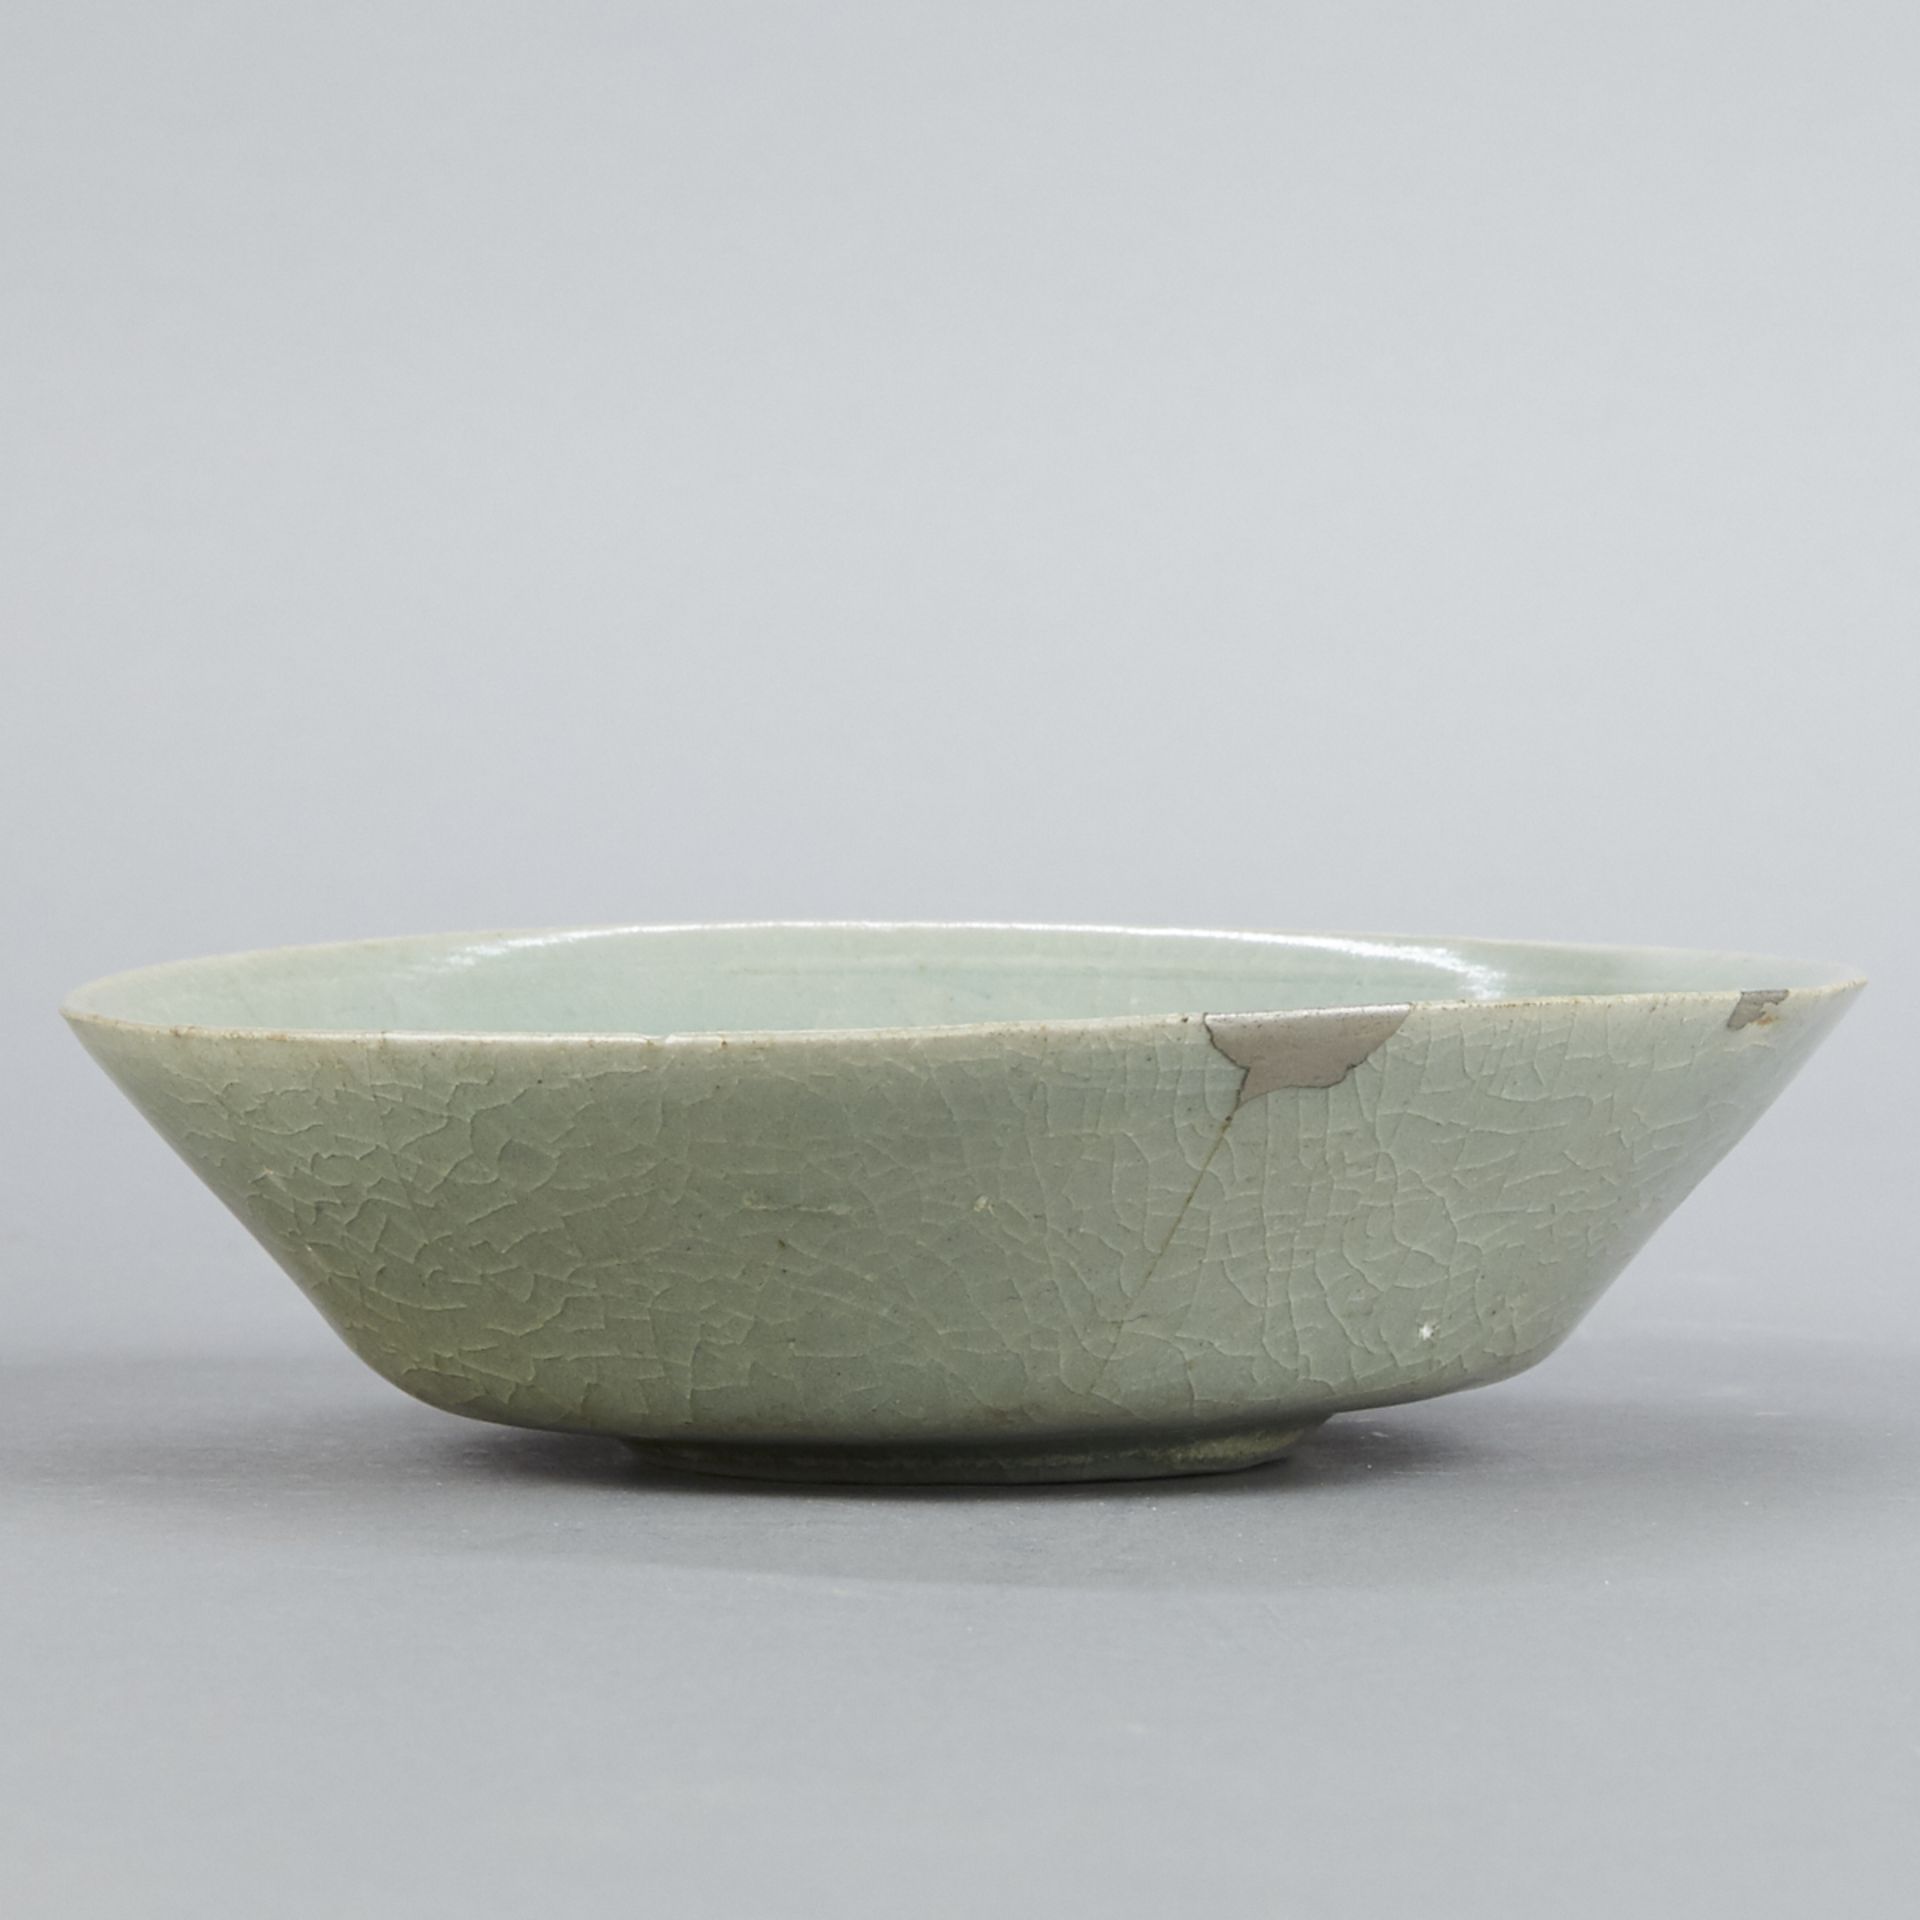 12th c. Chinese or Korean Celadon Porcelain Bowl - Image 4 of 6